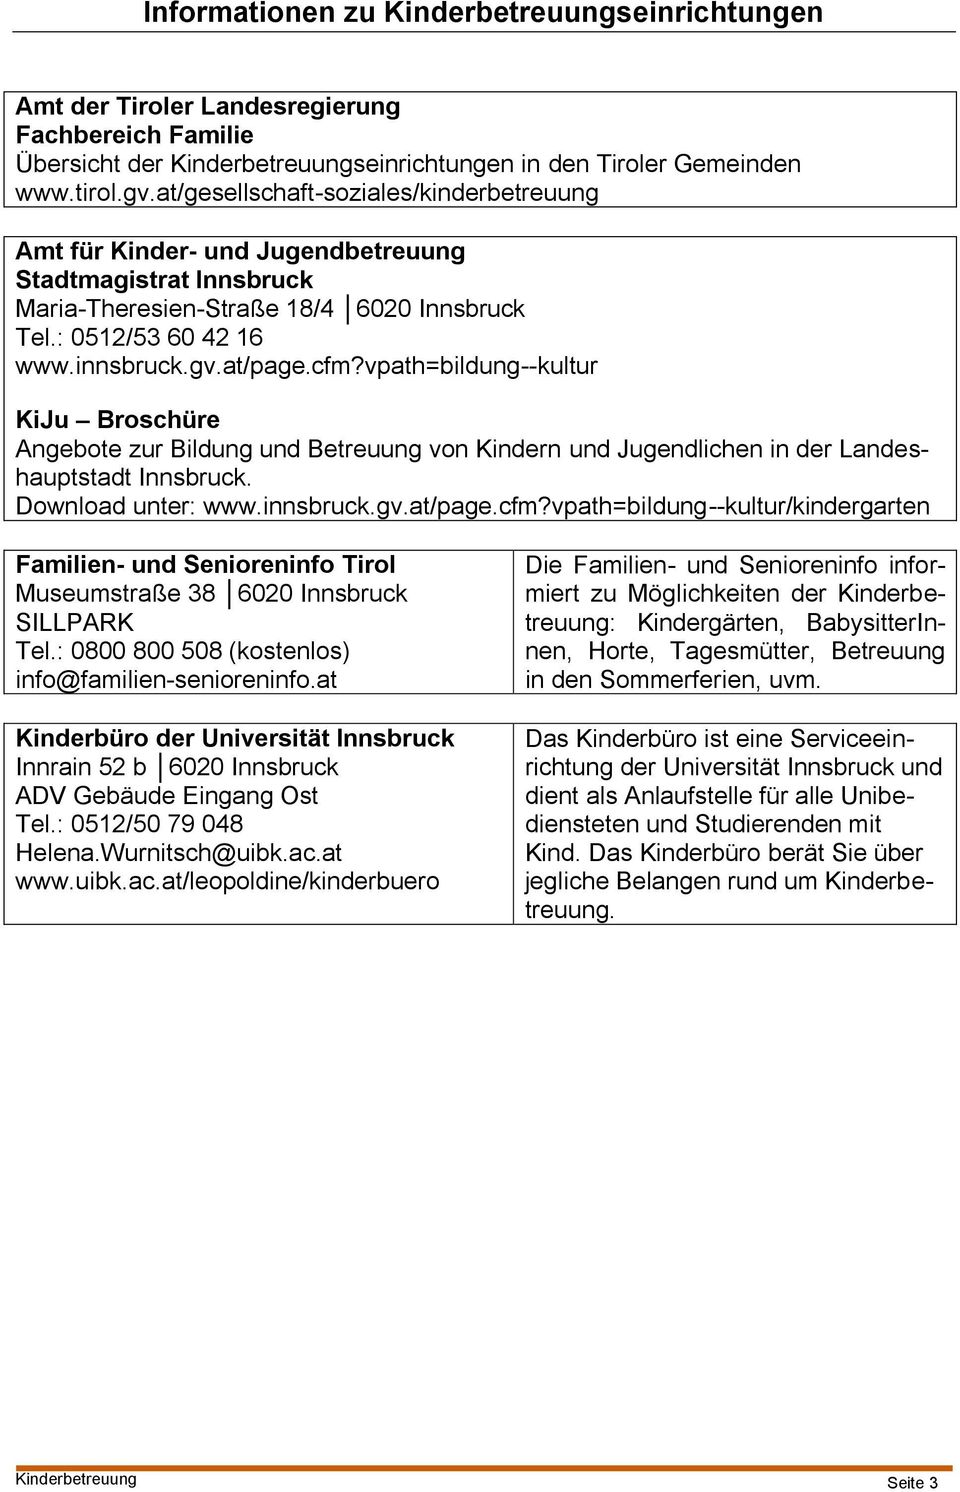 vpath=bildung--kultur KiJu Broschüre Angebote zur Bildung und Betreuung von Kindern und Jugendlichen in der Landeshauptstadt Innsbruck. Download unter: www.innsbruck.gv.at/page.cfm?